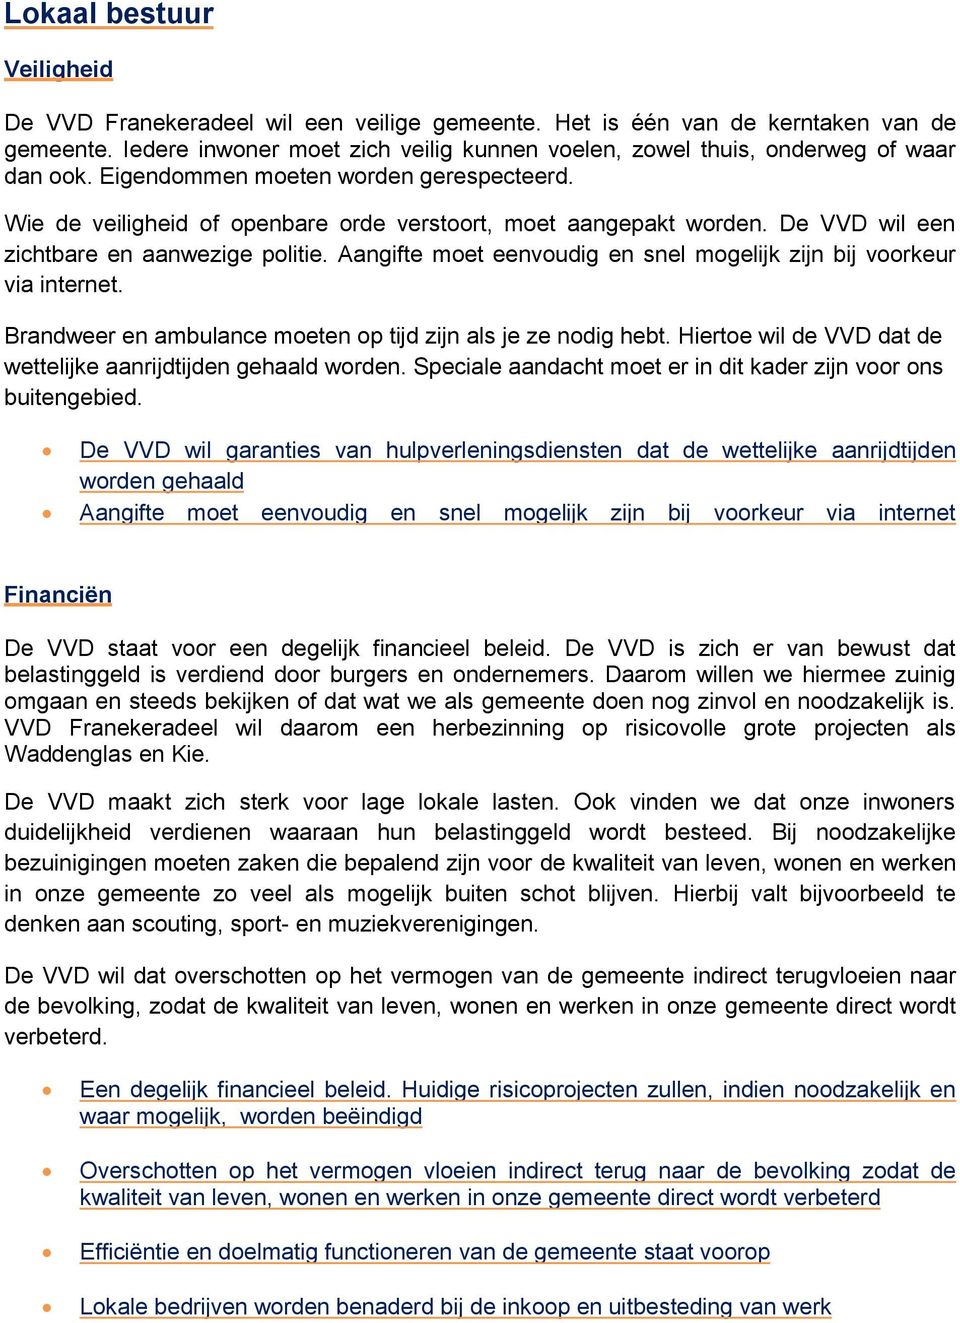 De VVD wil een zichtbare en aanwezige politie. Aangifte moet eenvoudig en snel mogelijk zijn bij voorkeur via internet. Brandweer en ambulance moeten op tijd zijn als je ze nodig hebt.